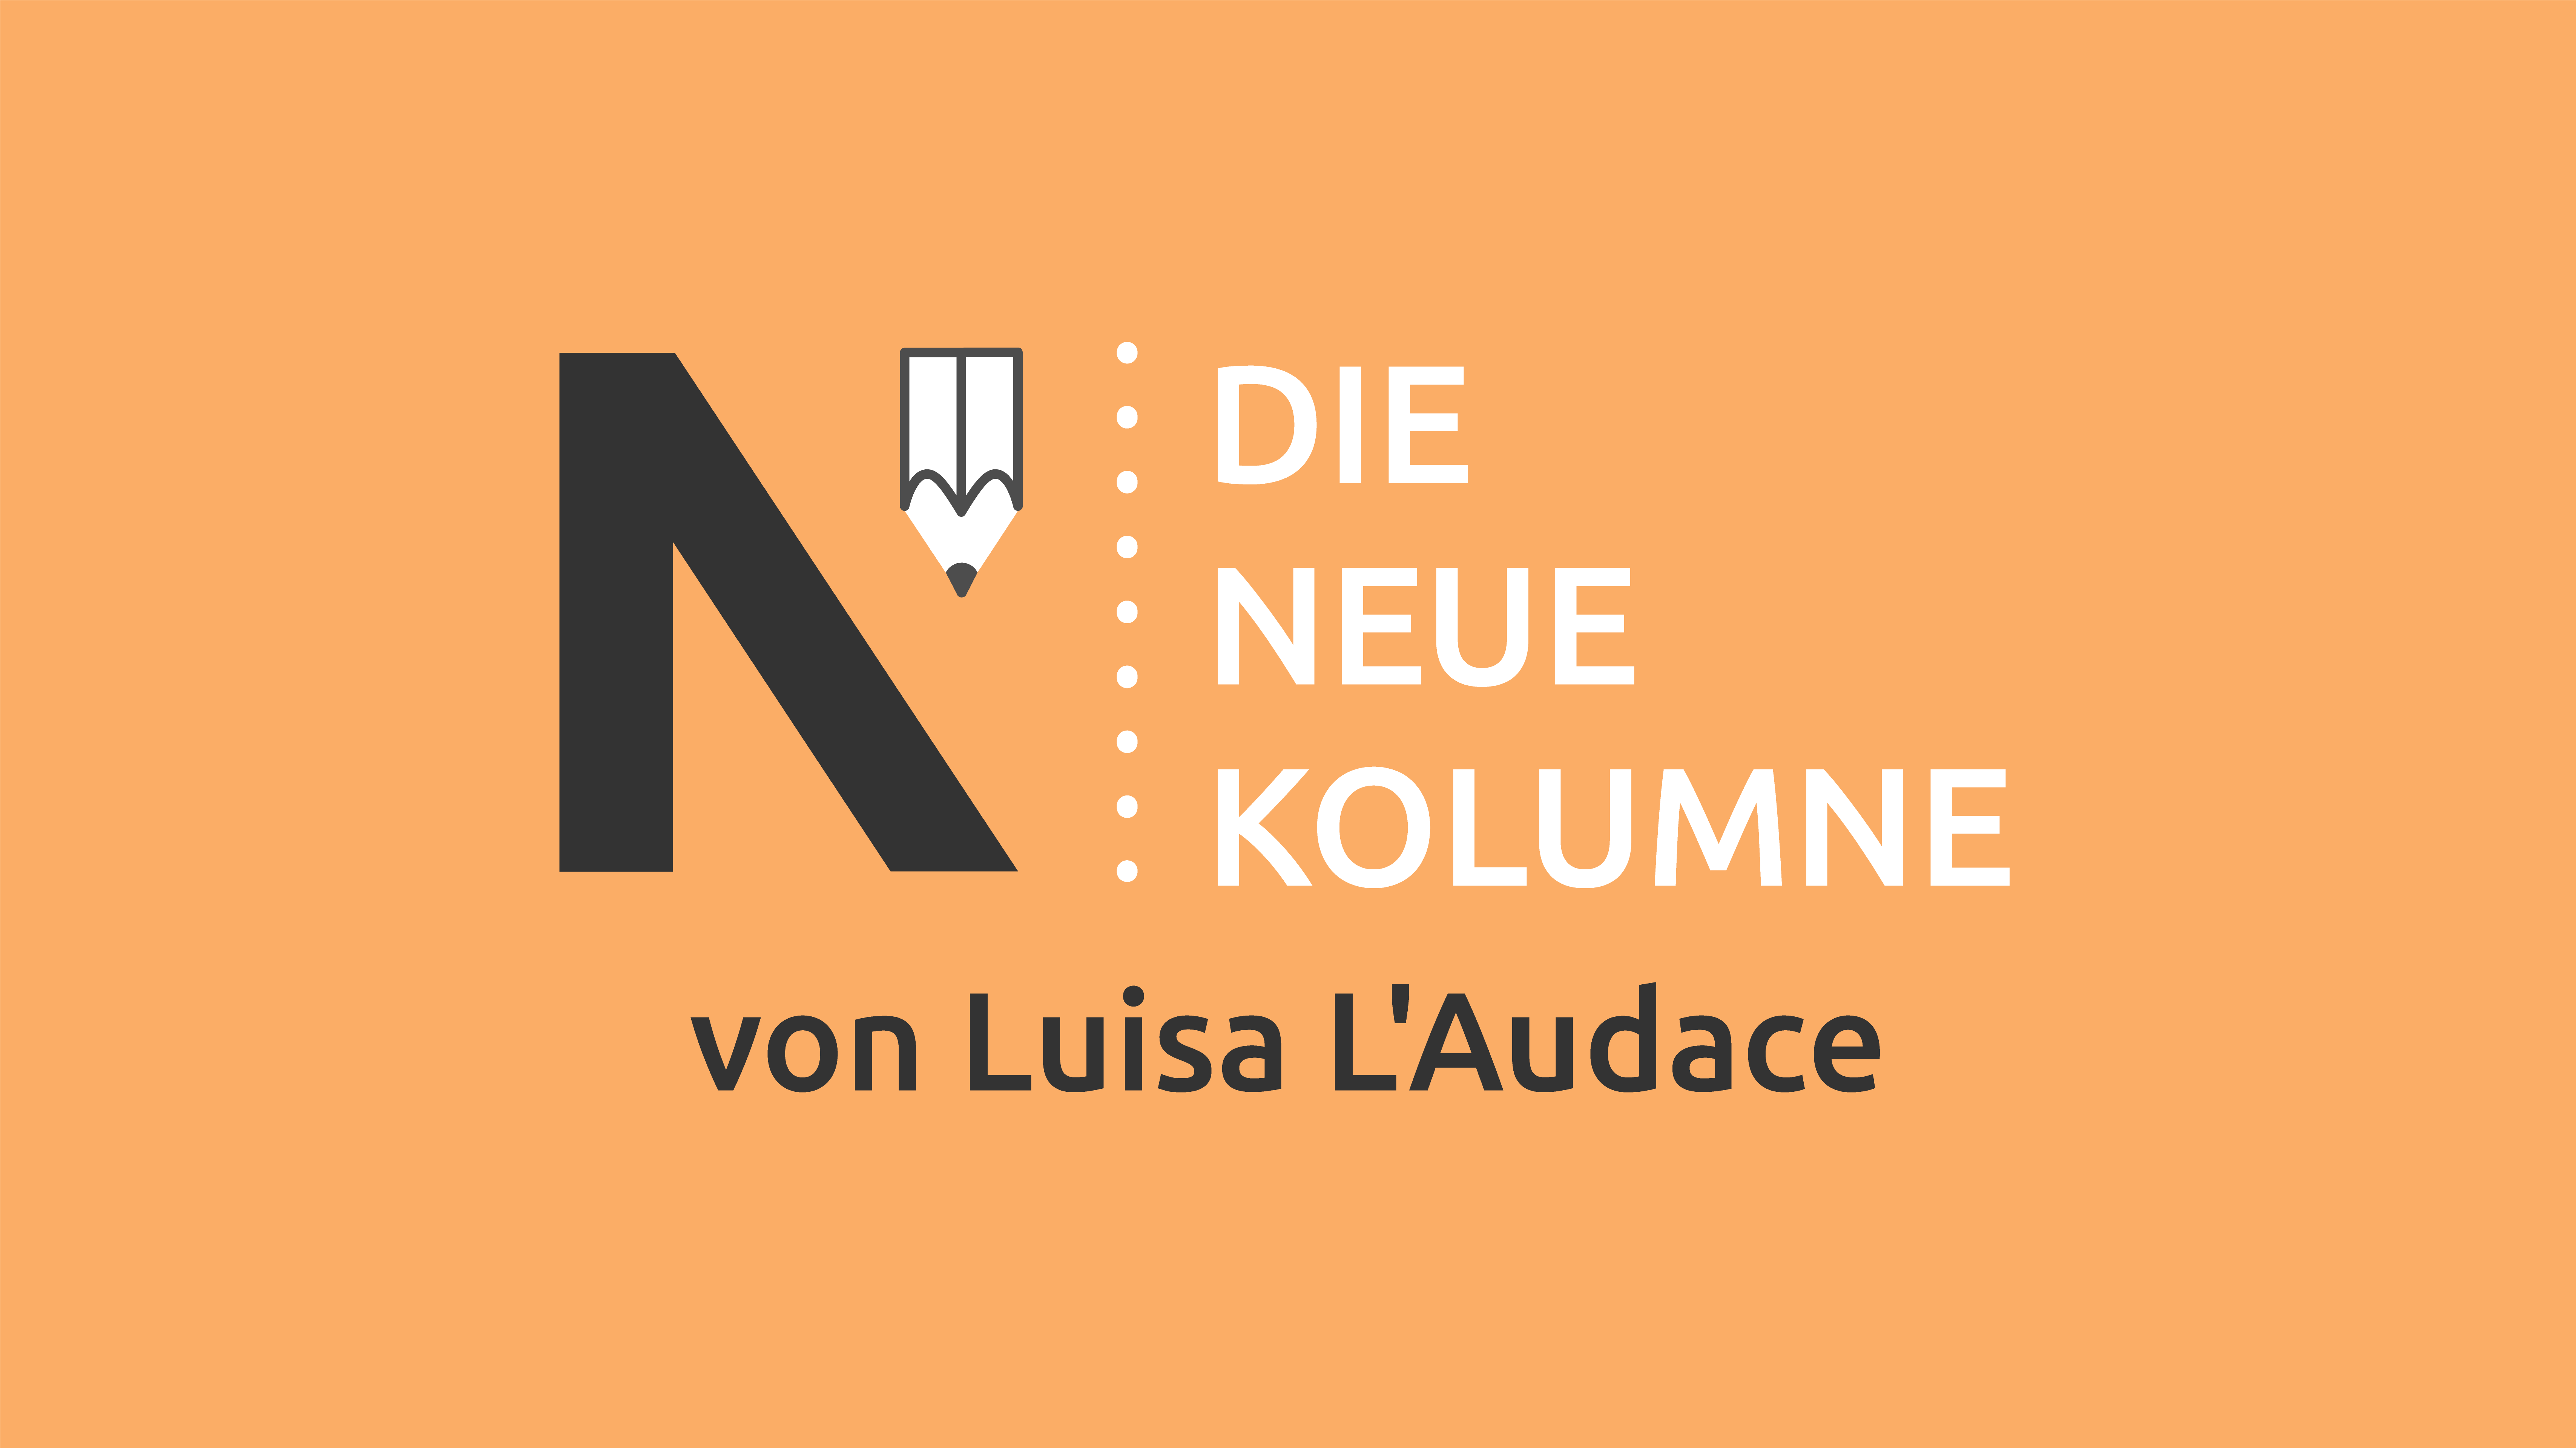 Das Logo von Die Neue Norm auf orangem Grund. Rechts davon steht: Die Neue Kolumne. Unten steht: Von Luisa L’Audace.